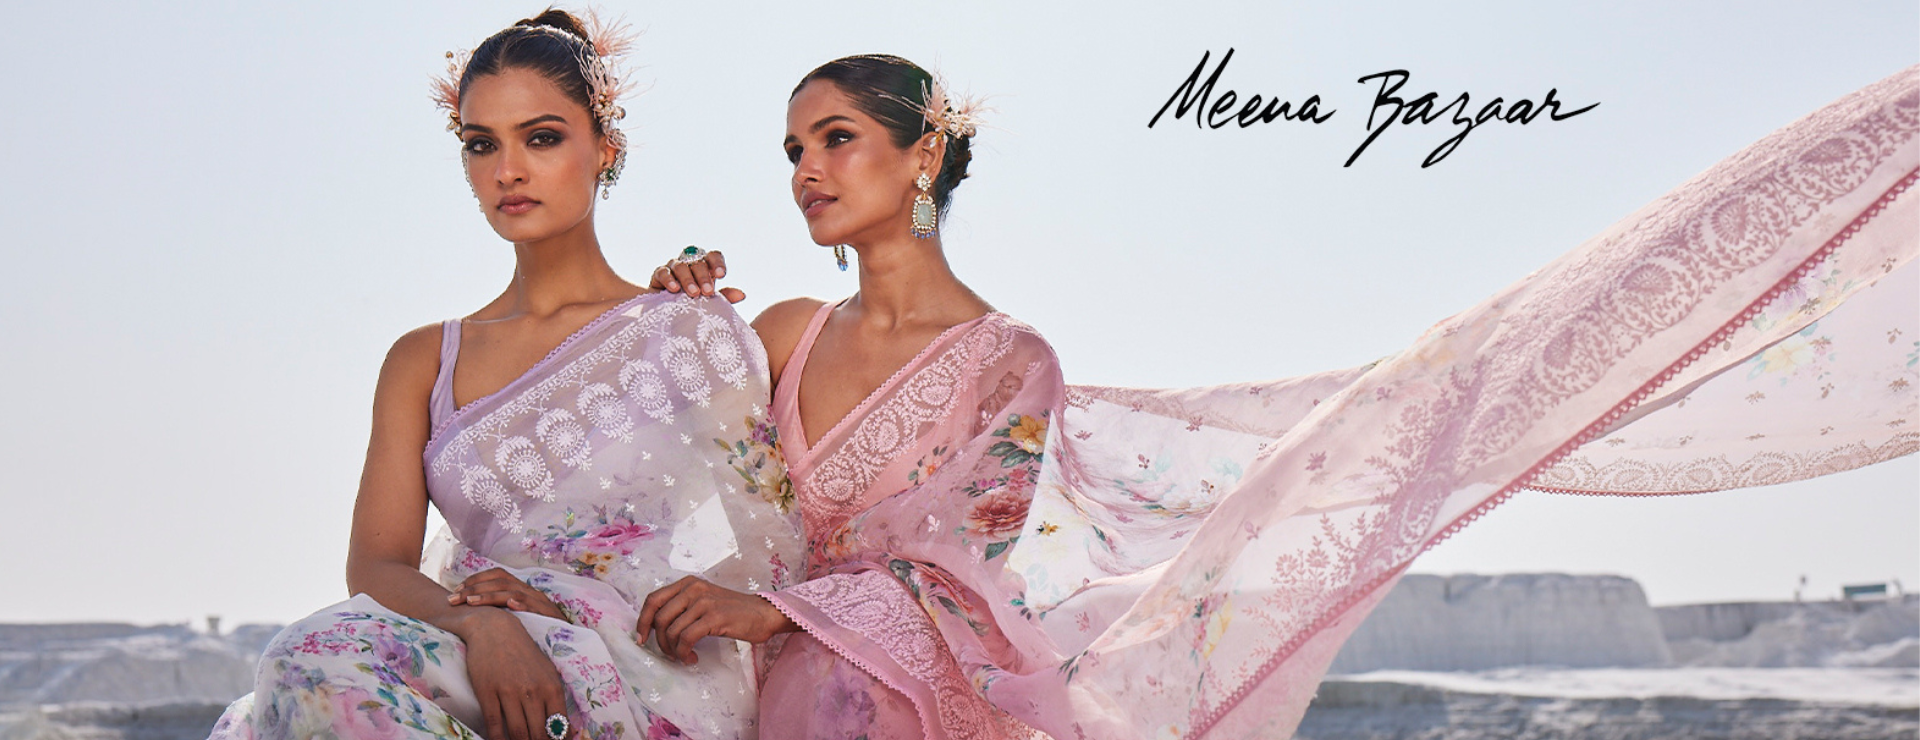 Meena Bazaar - Buy Meena Bazaar Clothing Online in India | Myntra